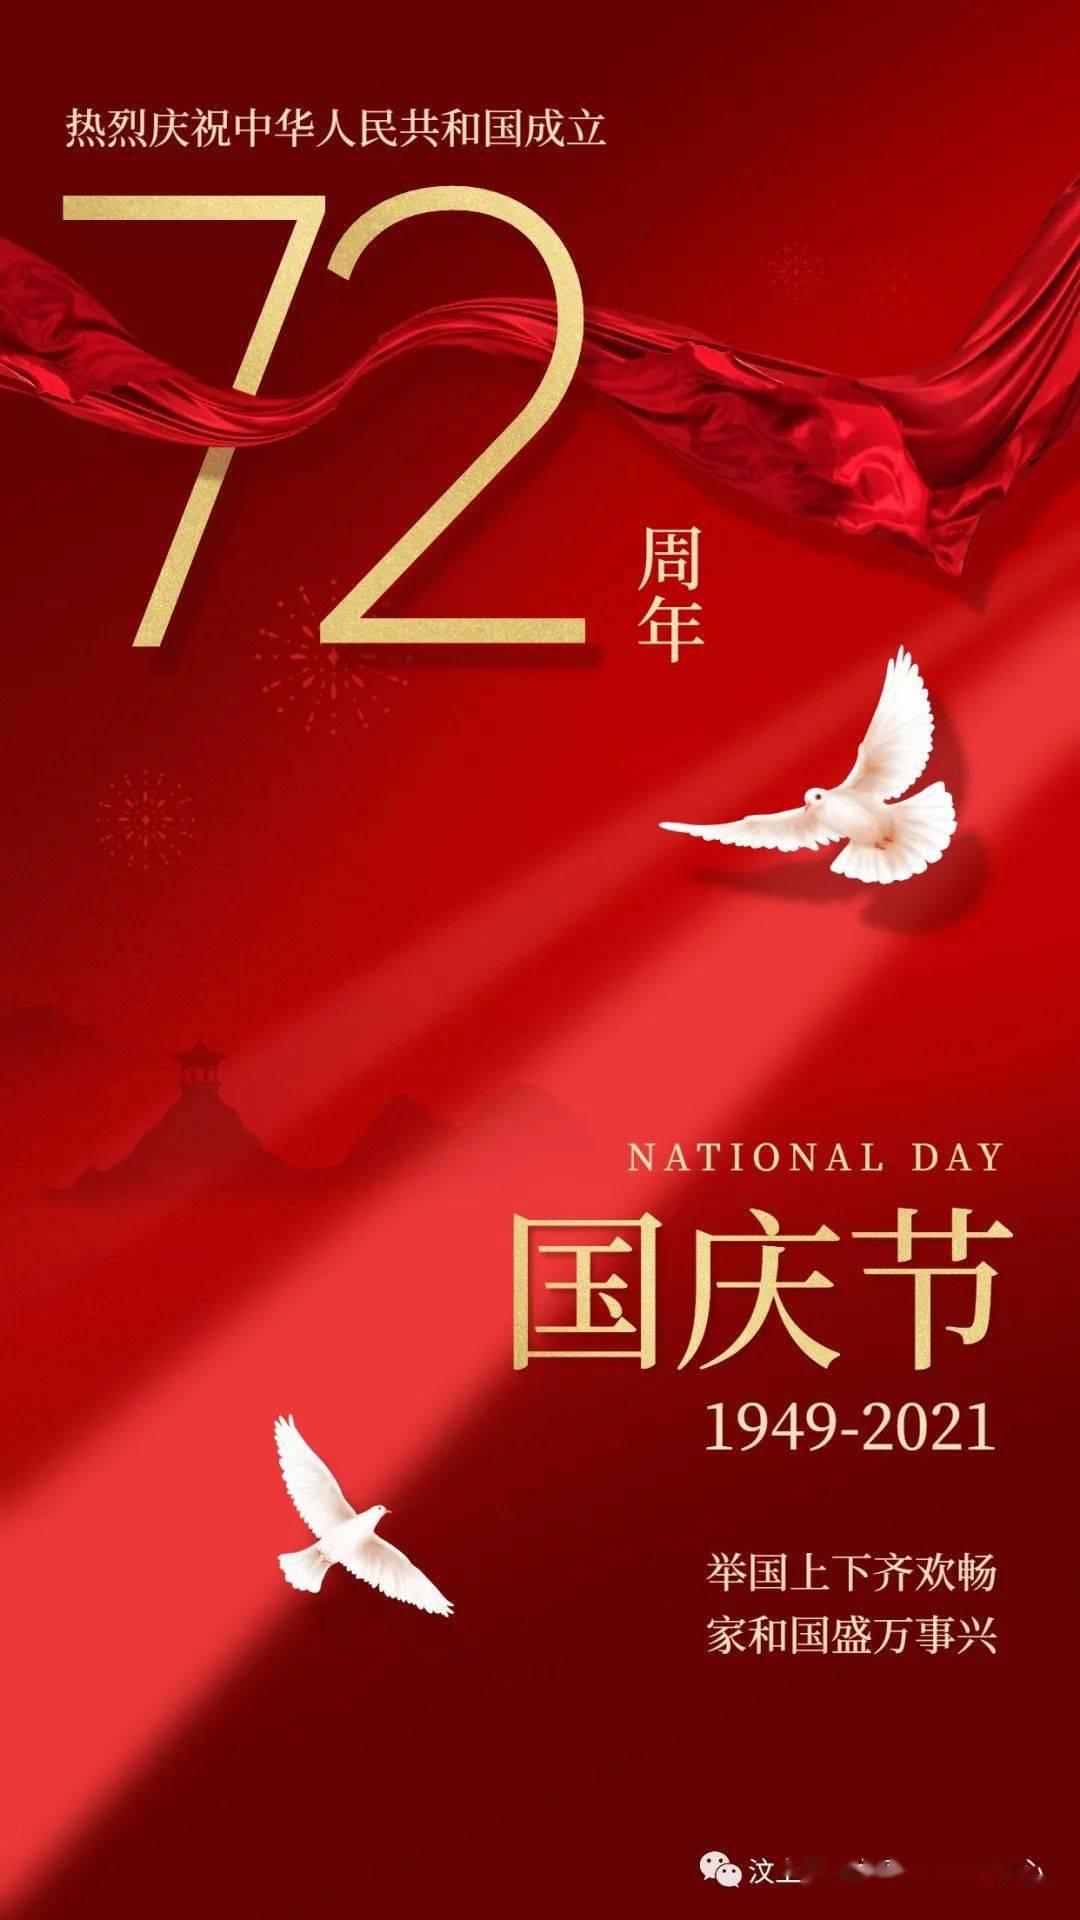 【喜迎国庆,祝福祖国】汶上县机关事务中心庆祝祖国72